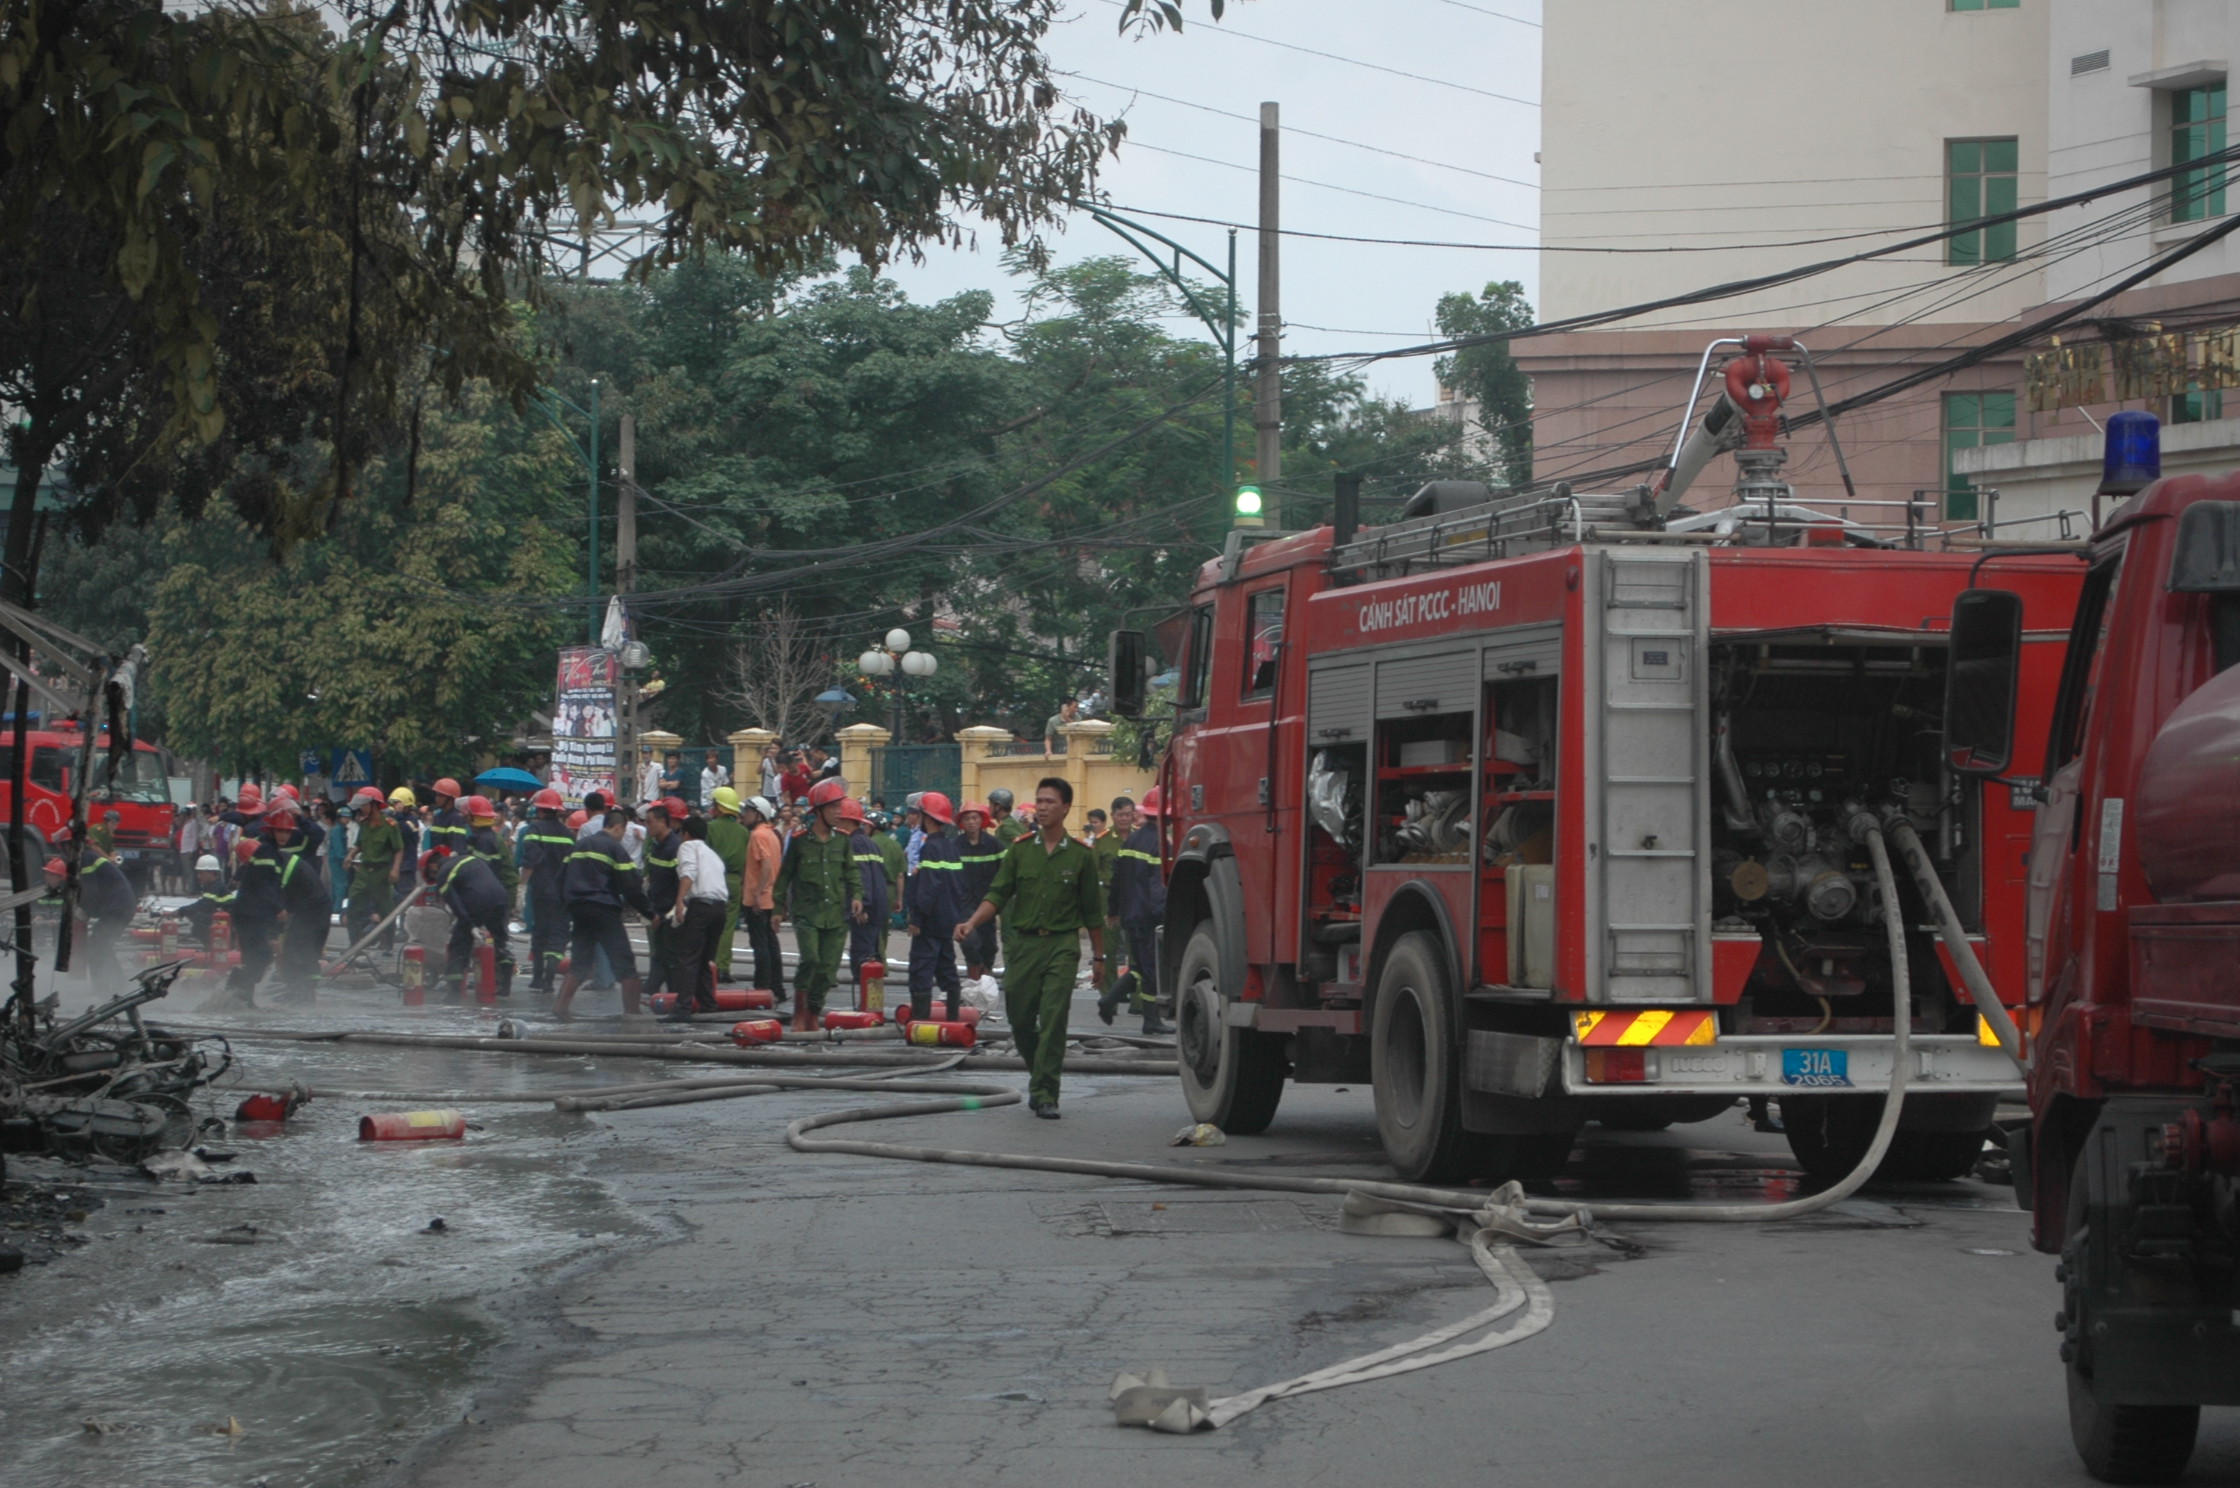 Xã hội - Ảnh: Hiện trường vụ cháy nổ cây xăng gần viện 108 (Hình 3).